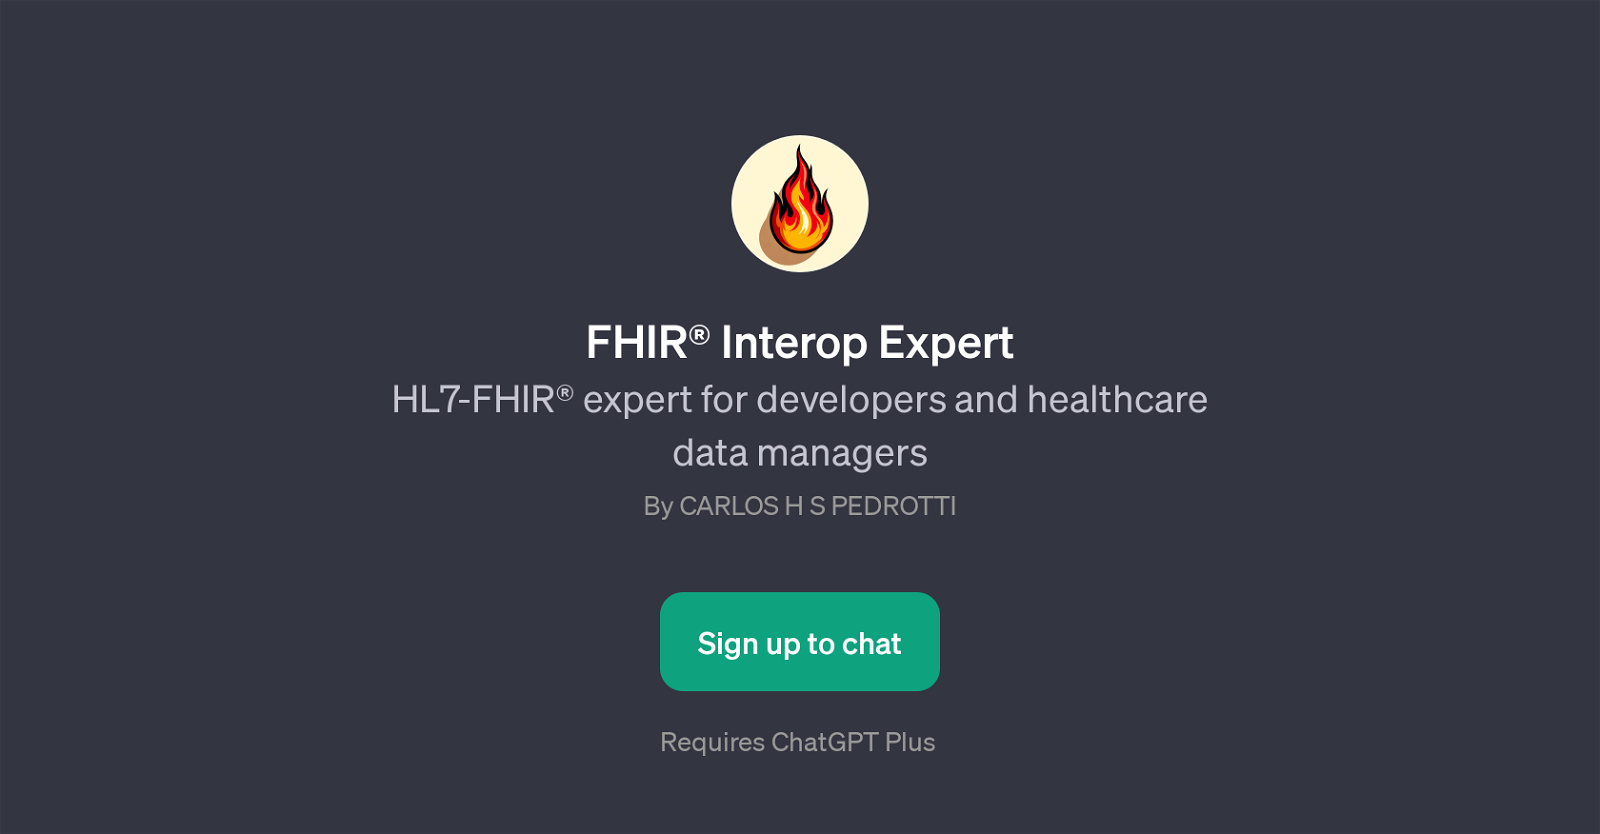 FHIR Interop Expert website